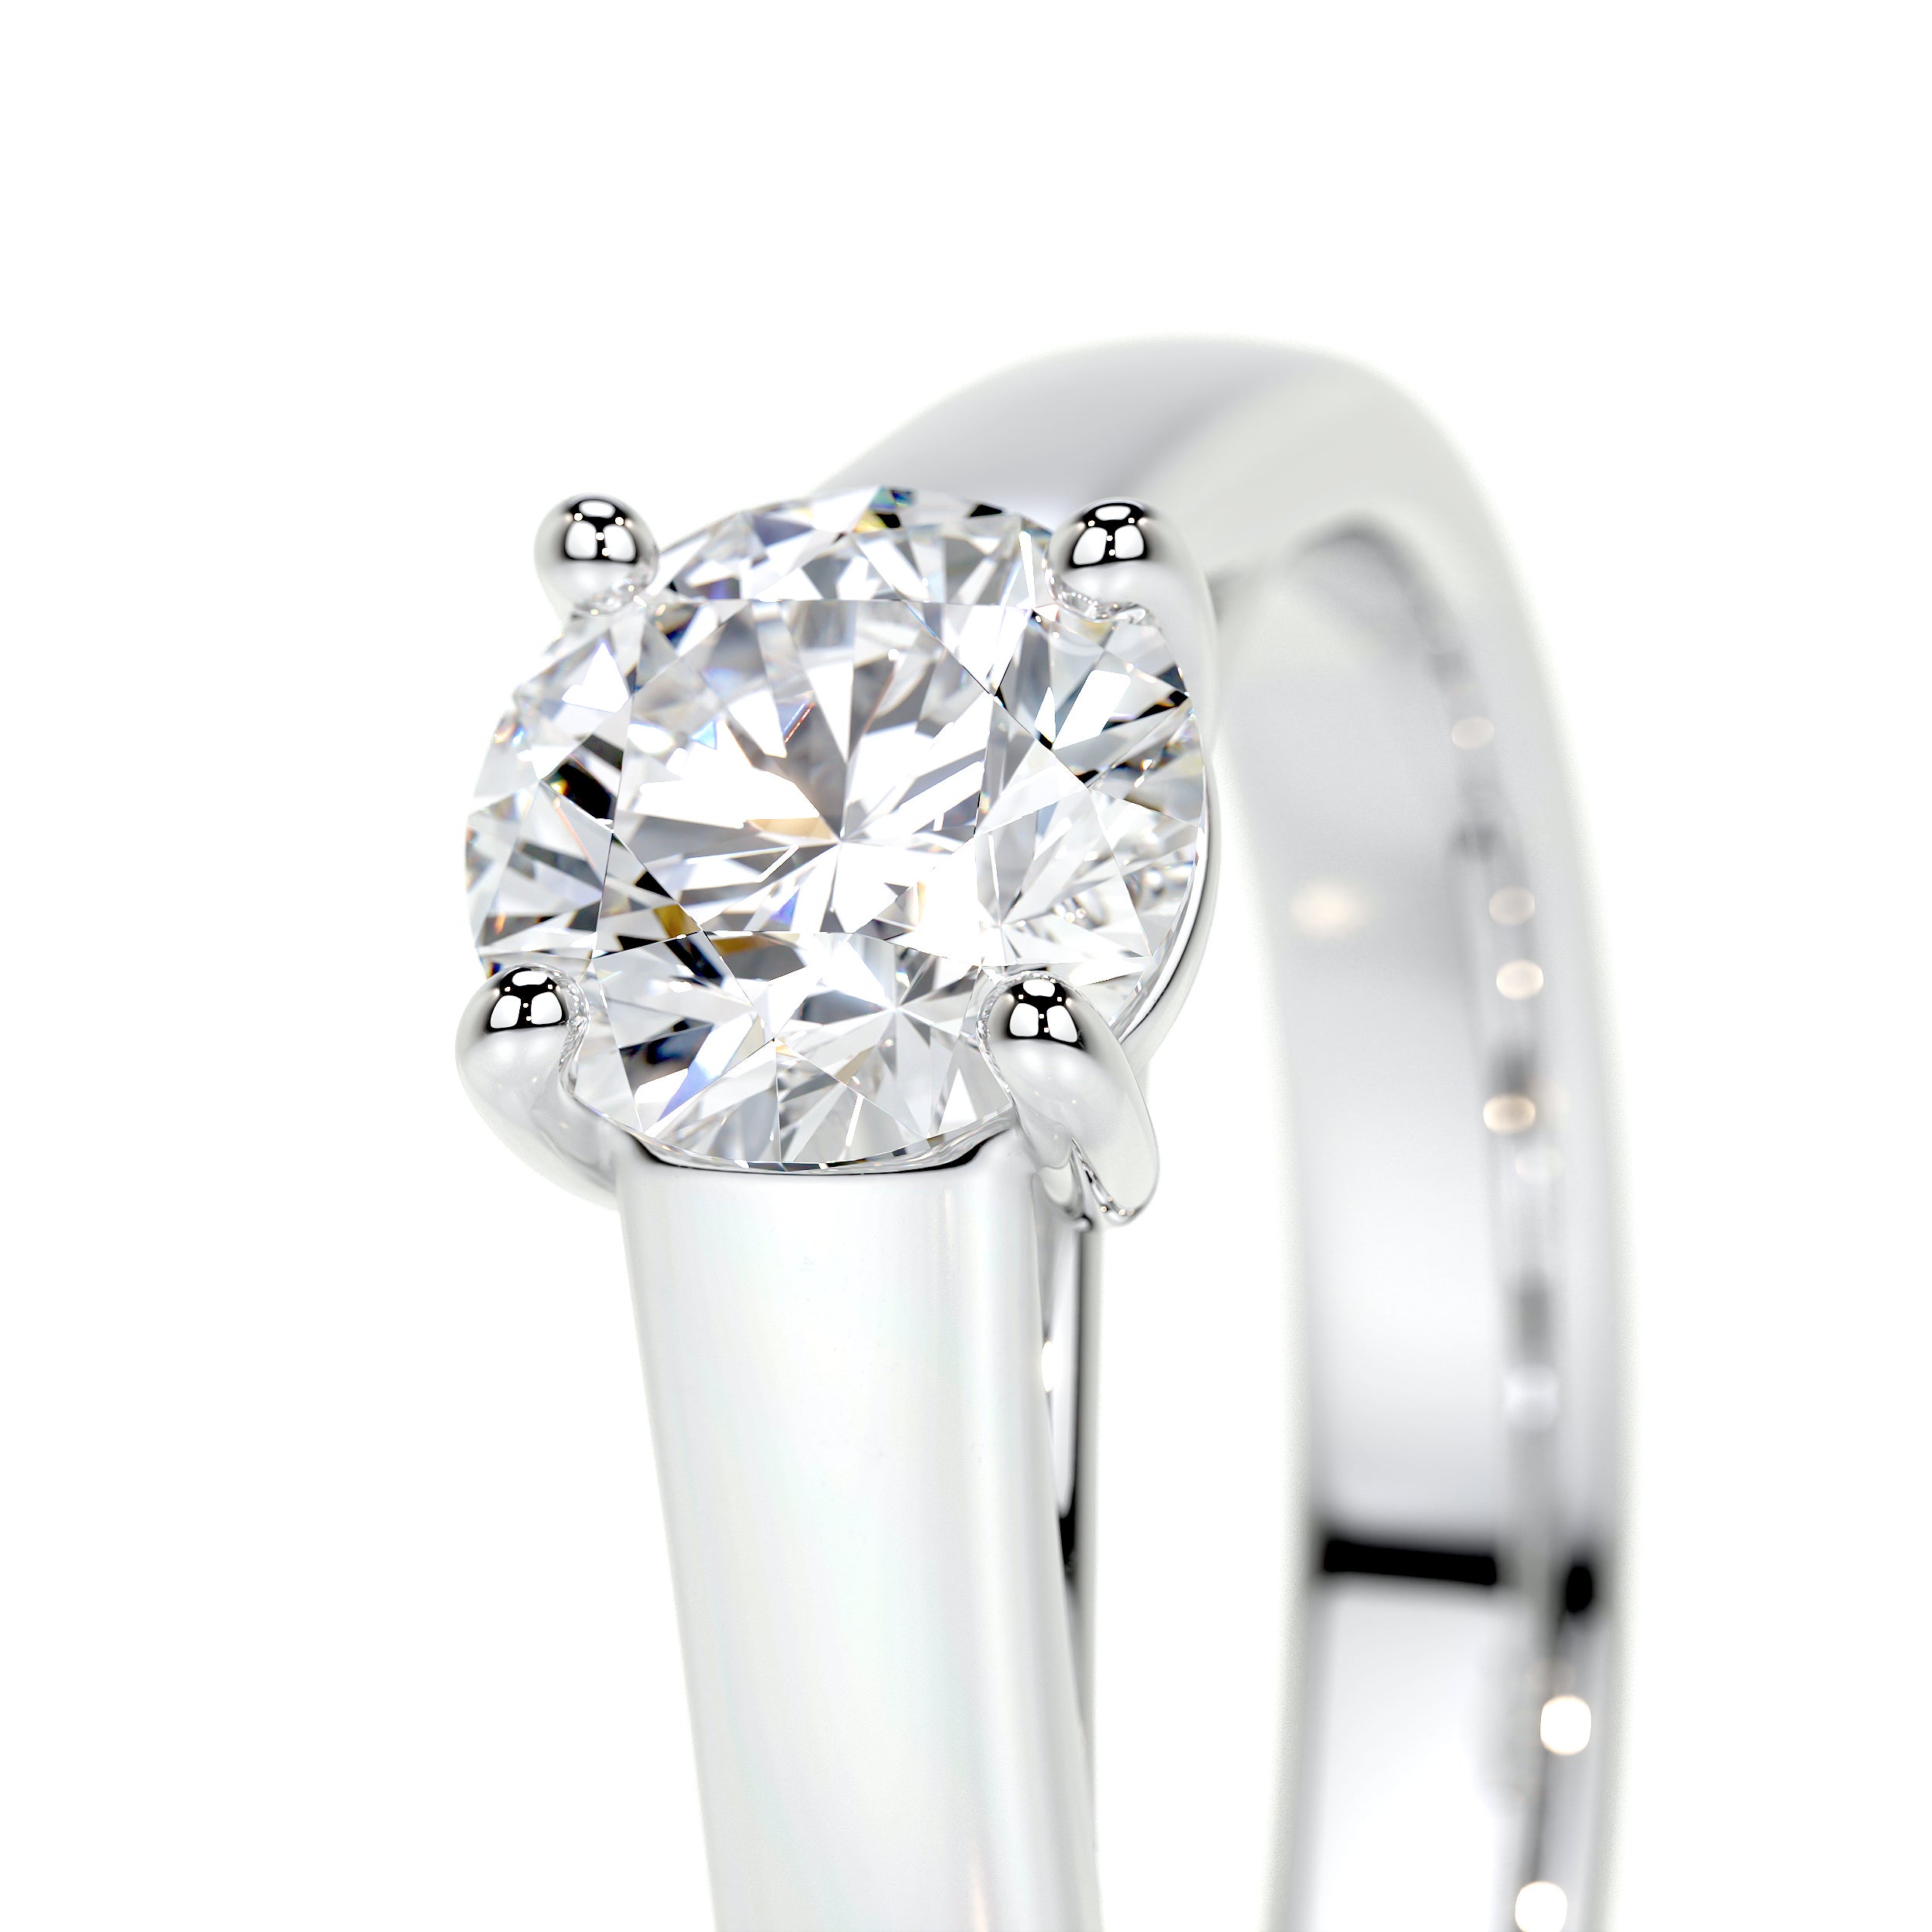 Nola Lab Grown Diamond Ring   (0.80 Carat) -14K White Gold